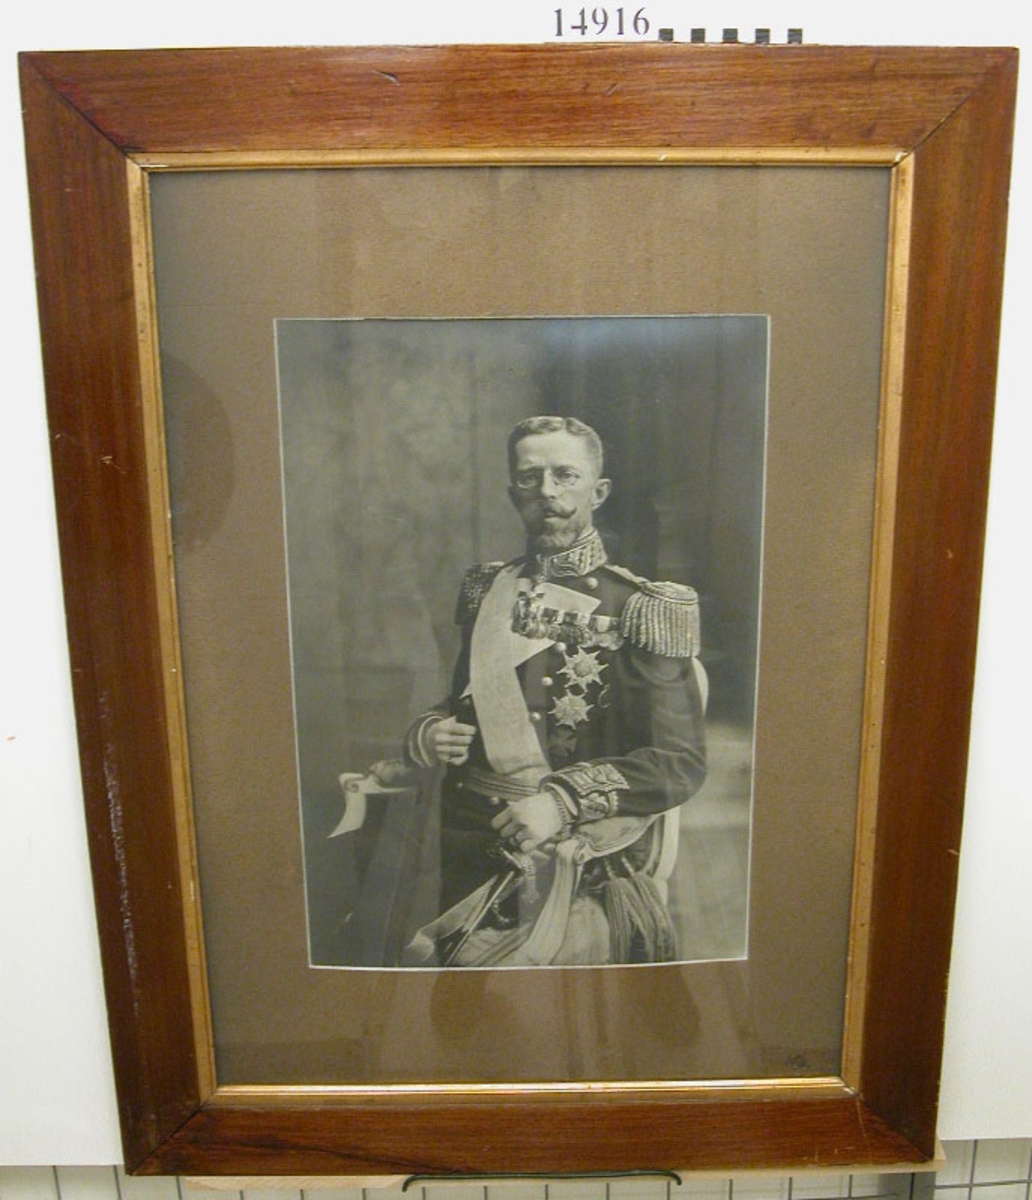 Fotografi inom glas och ram av HM Gustaf V.
Neg.nr A 774 1:6